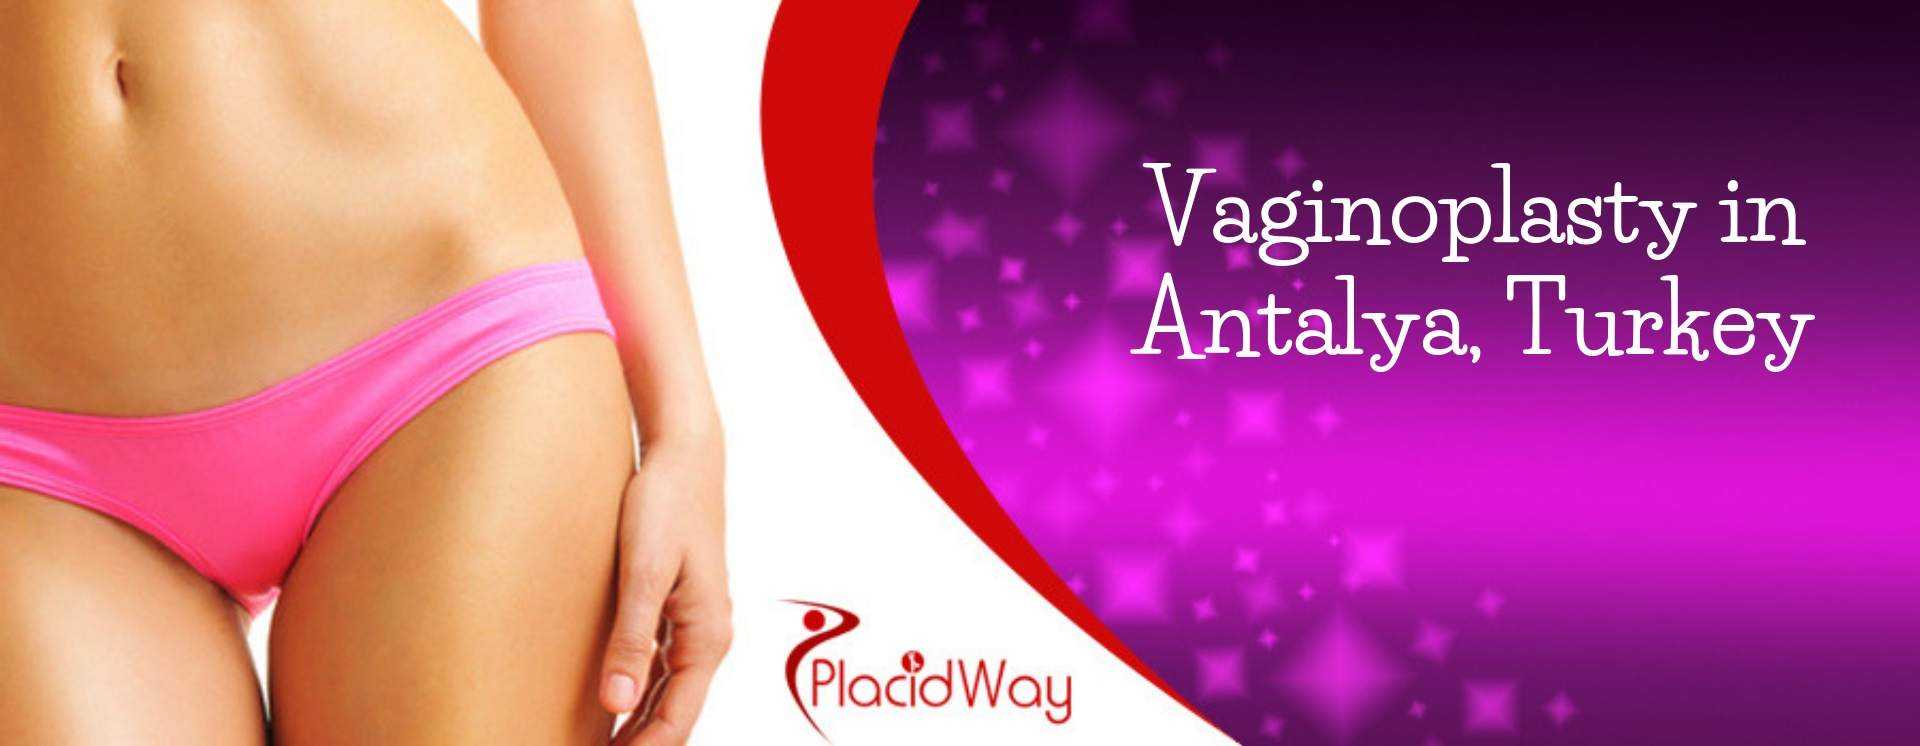 Vaginoplasty in Antalya, Turkey